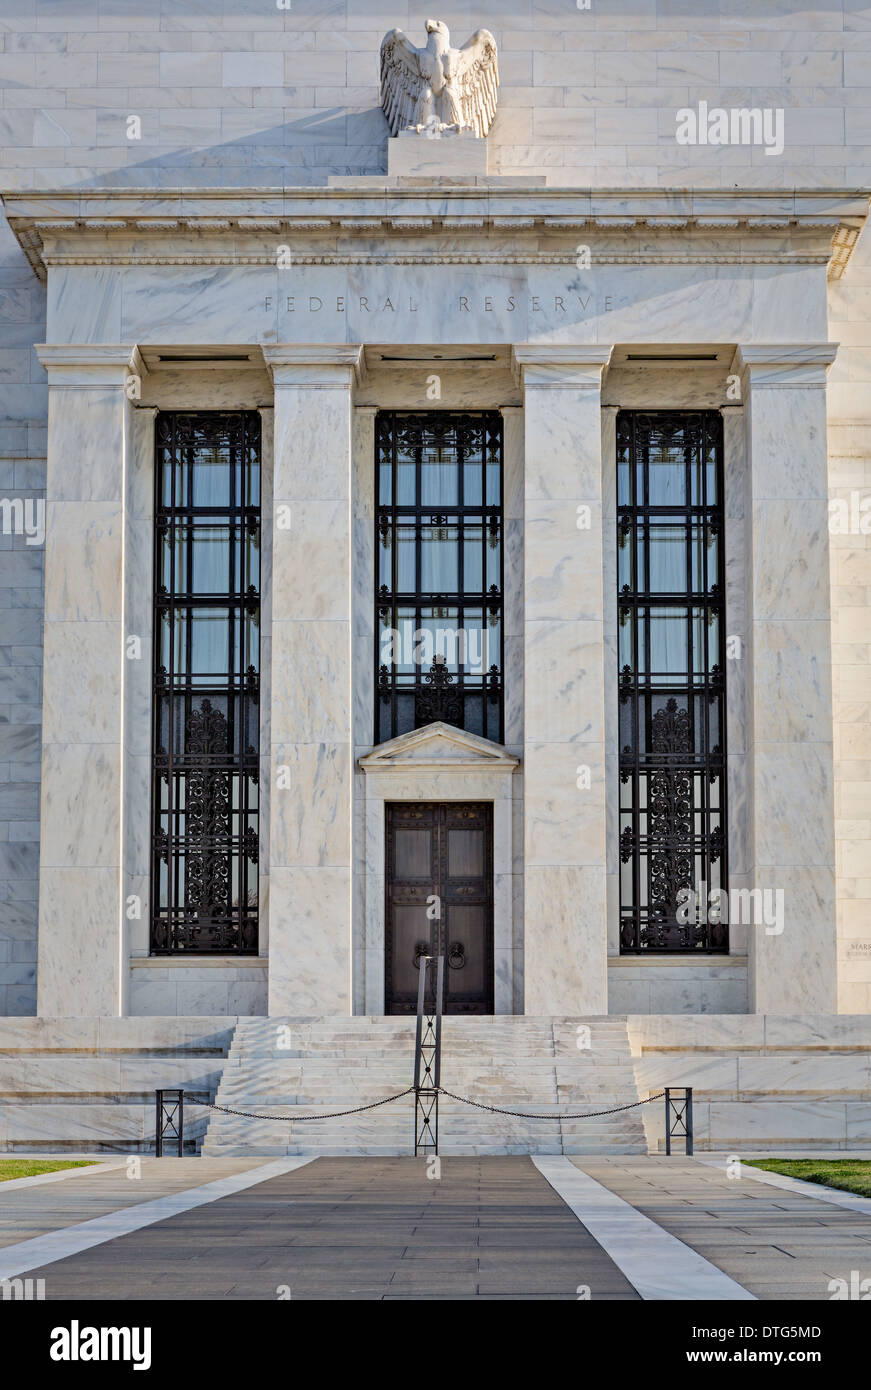 Une vue de face de la Réserve fédérale des États-Unis entrée de l'édifice dans les nations capitol Washington DC. Banque D'Images